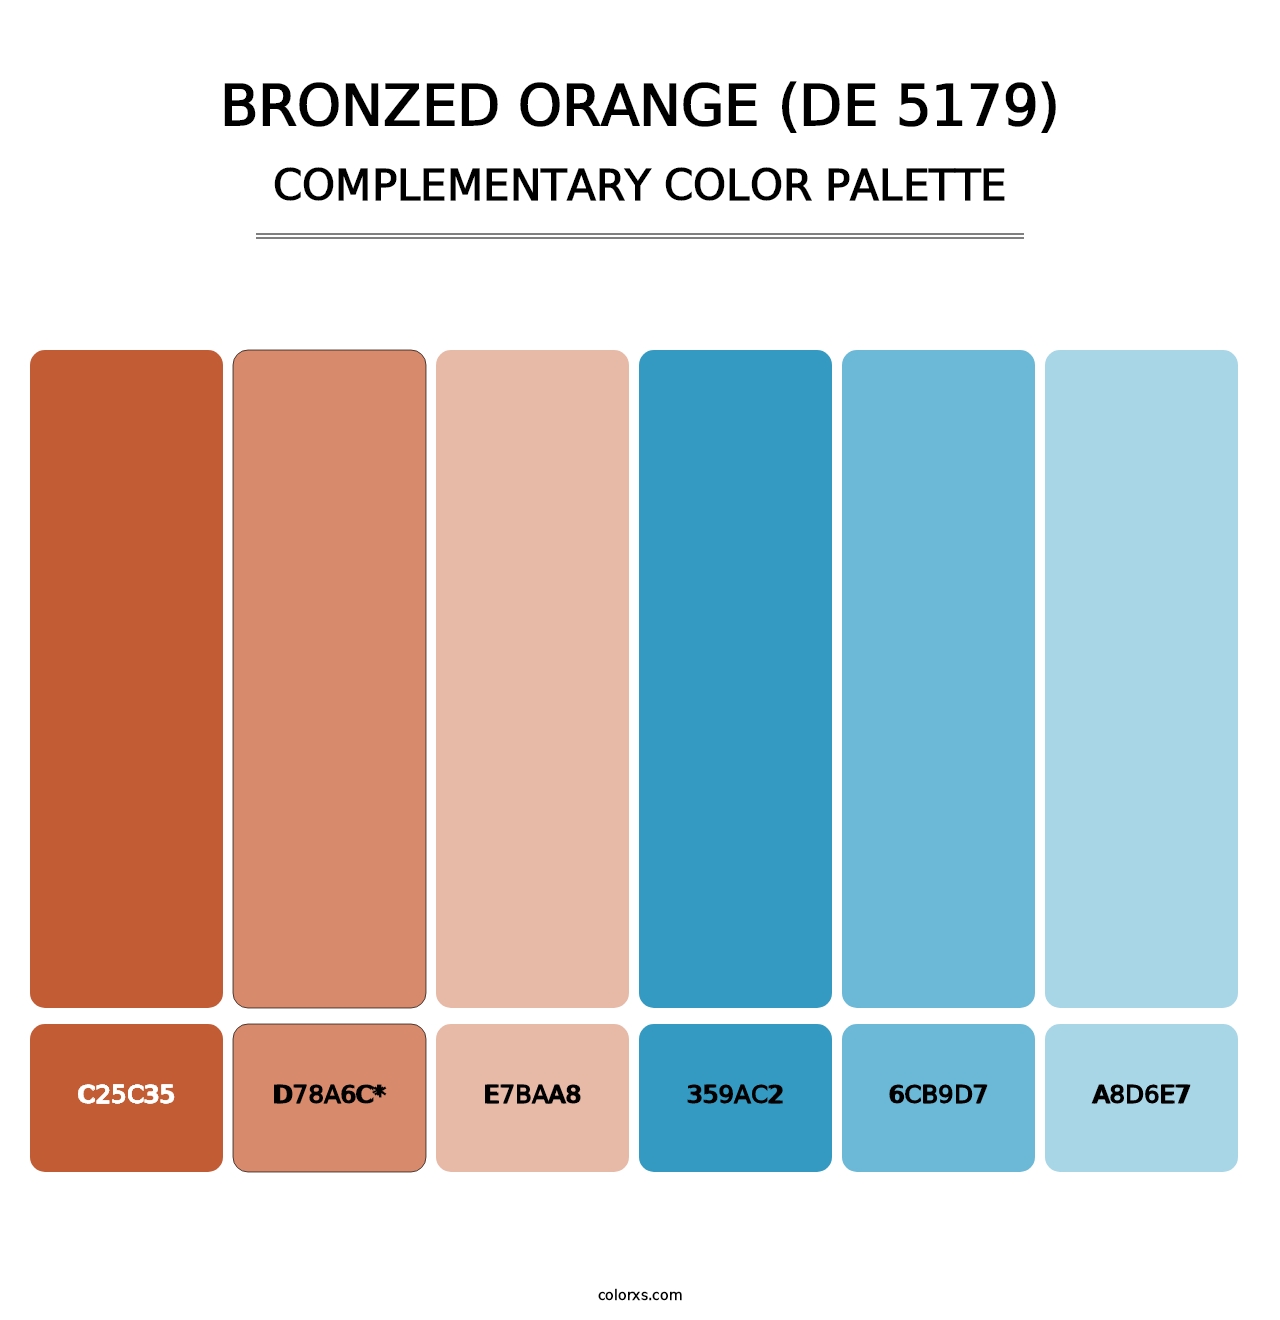 Bronzed Orange (DE 5179) - Complementary Color Palette